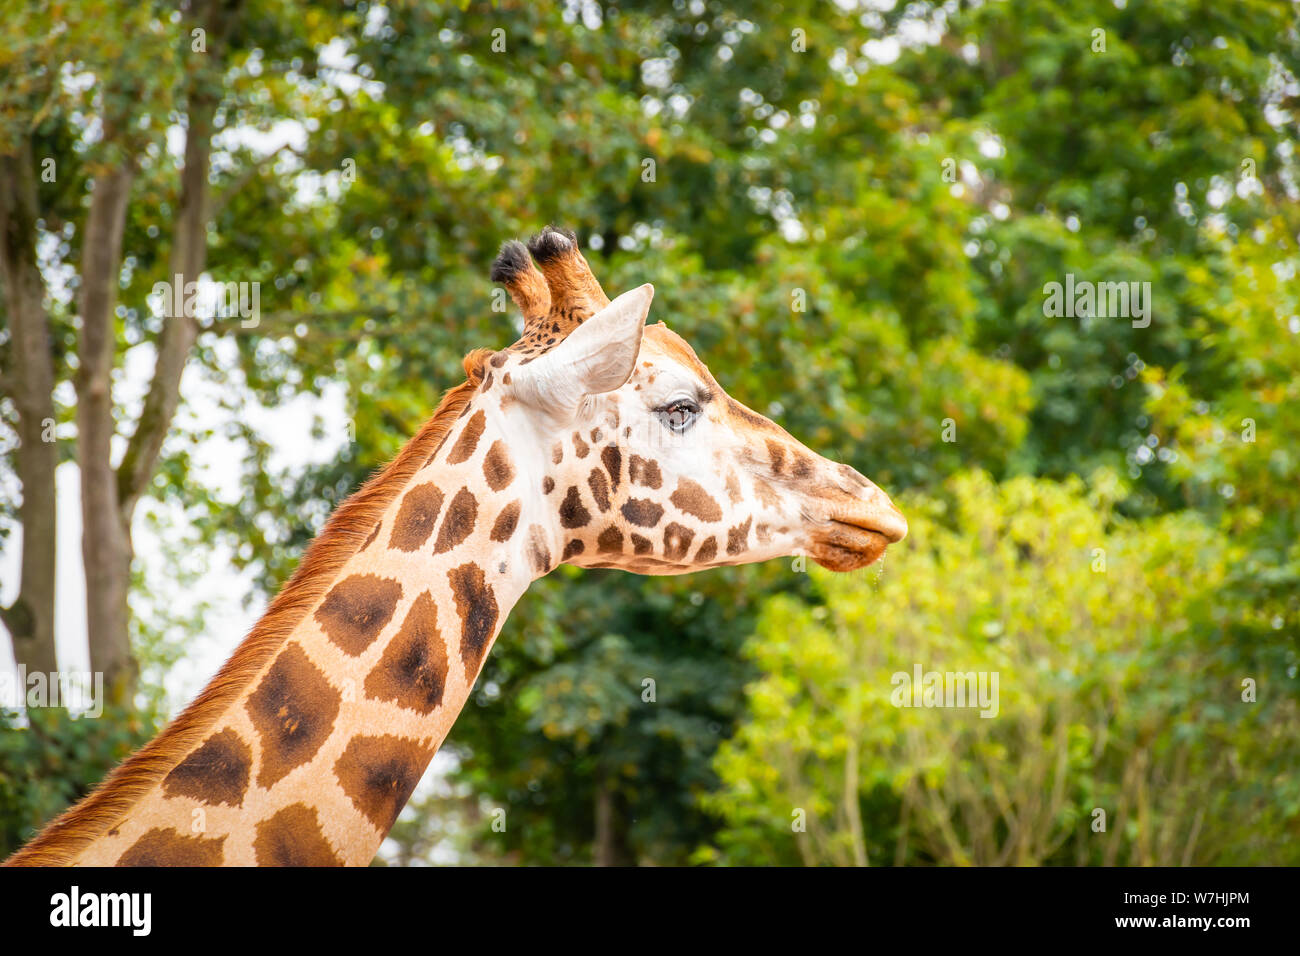 Vue latérale de la tête de girafe africaine dans l'avant de l'arrière-plan de l'arbre vert. Banque D'Images